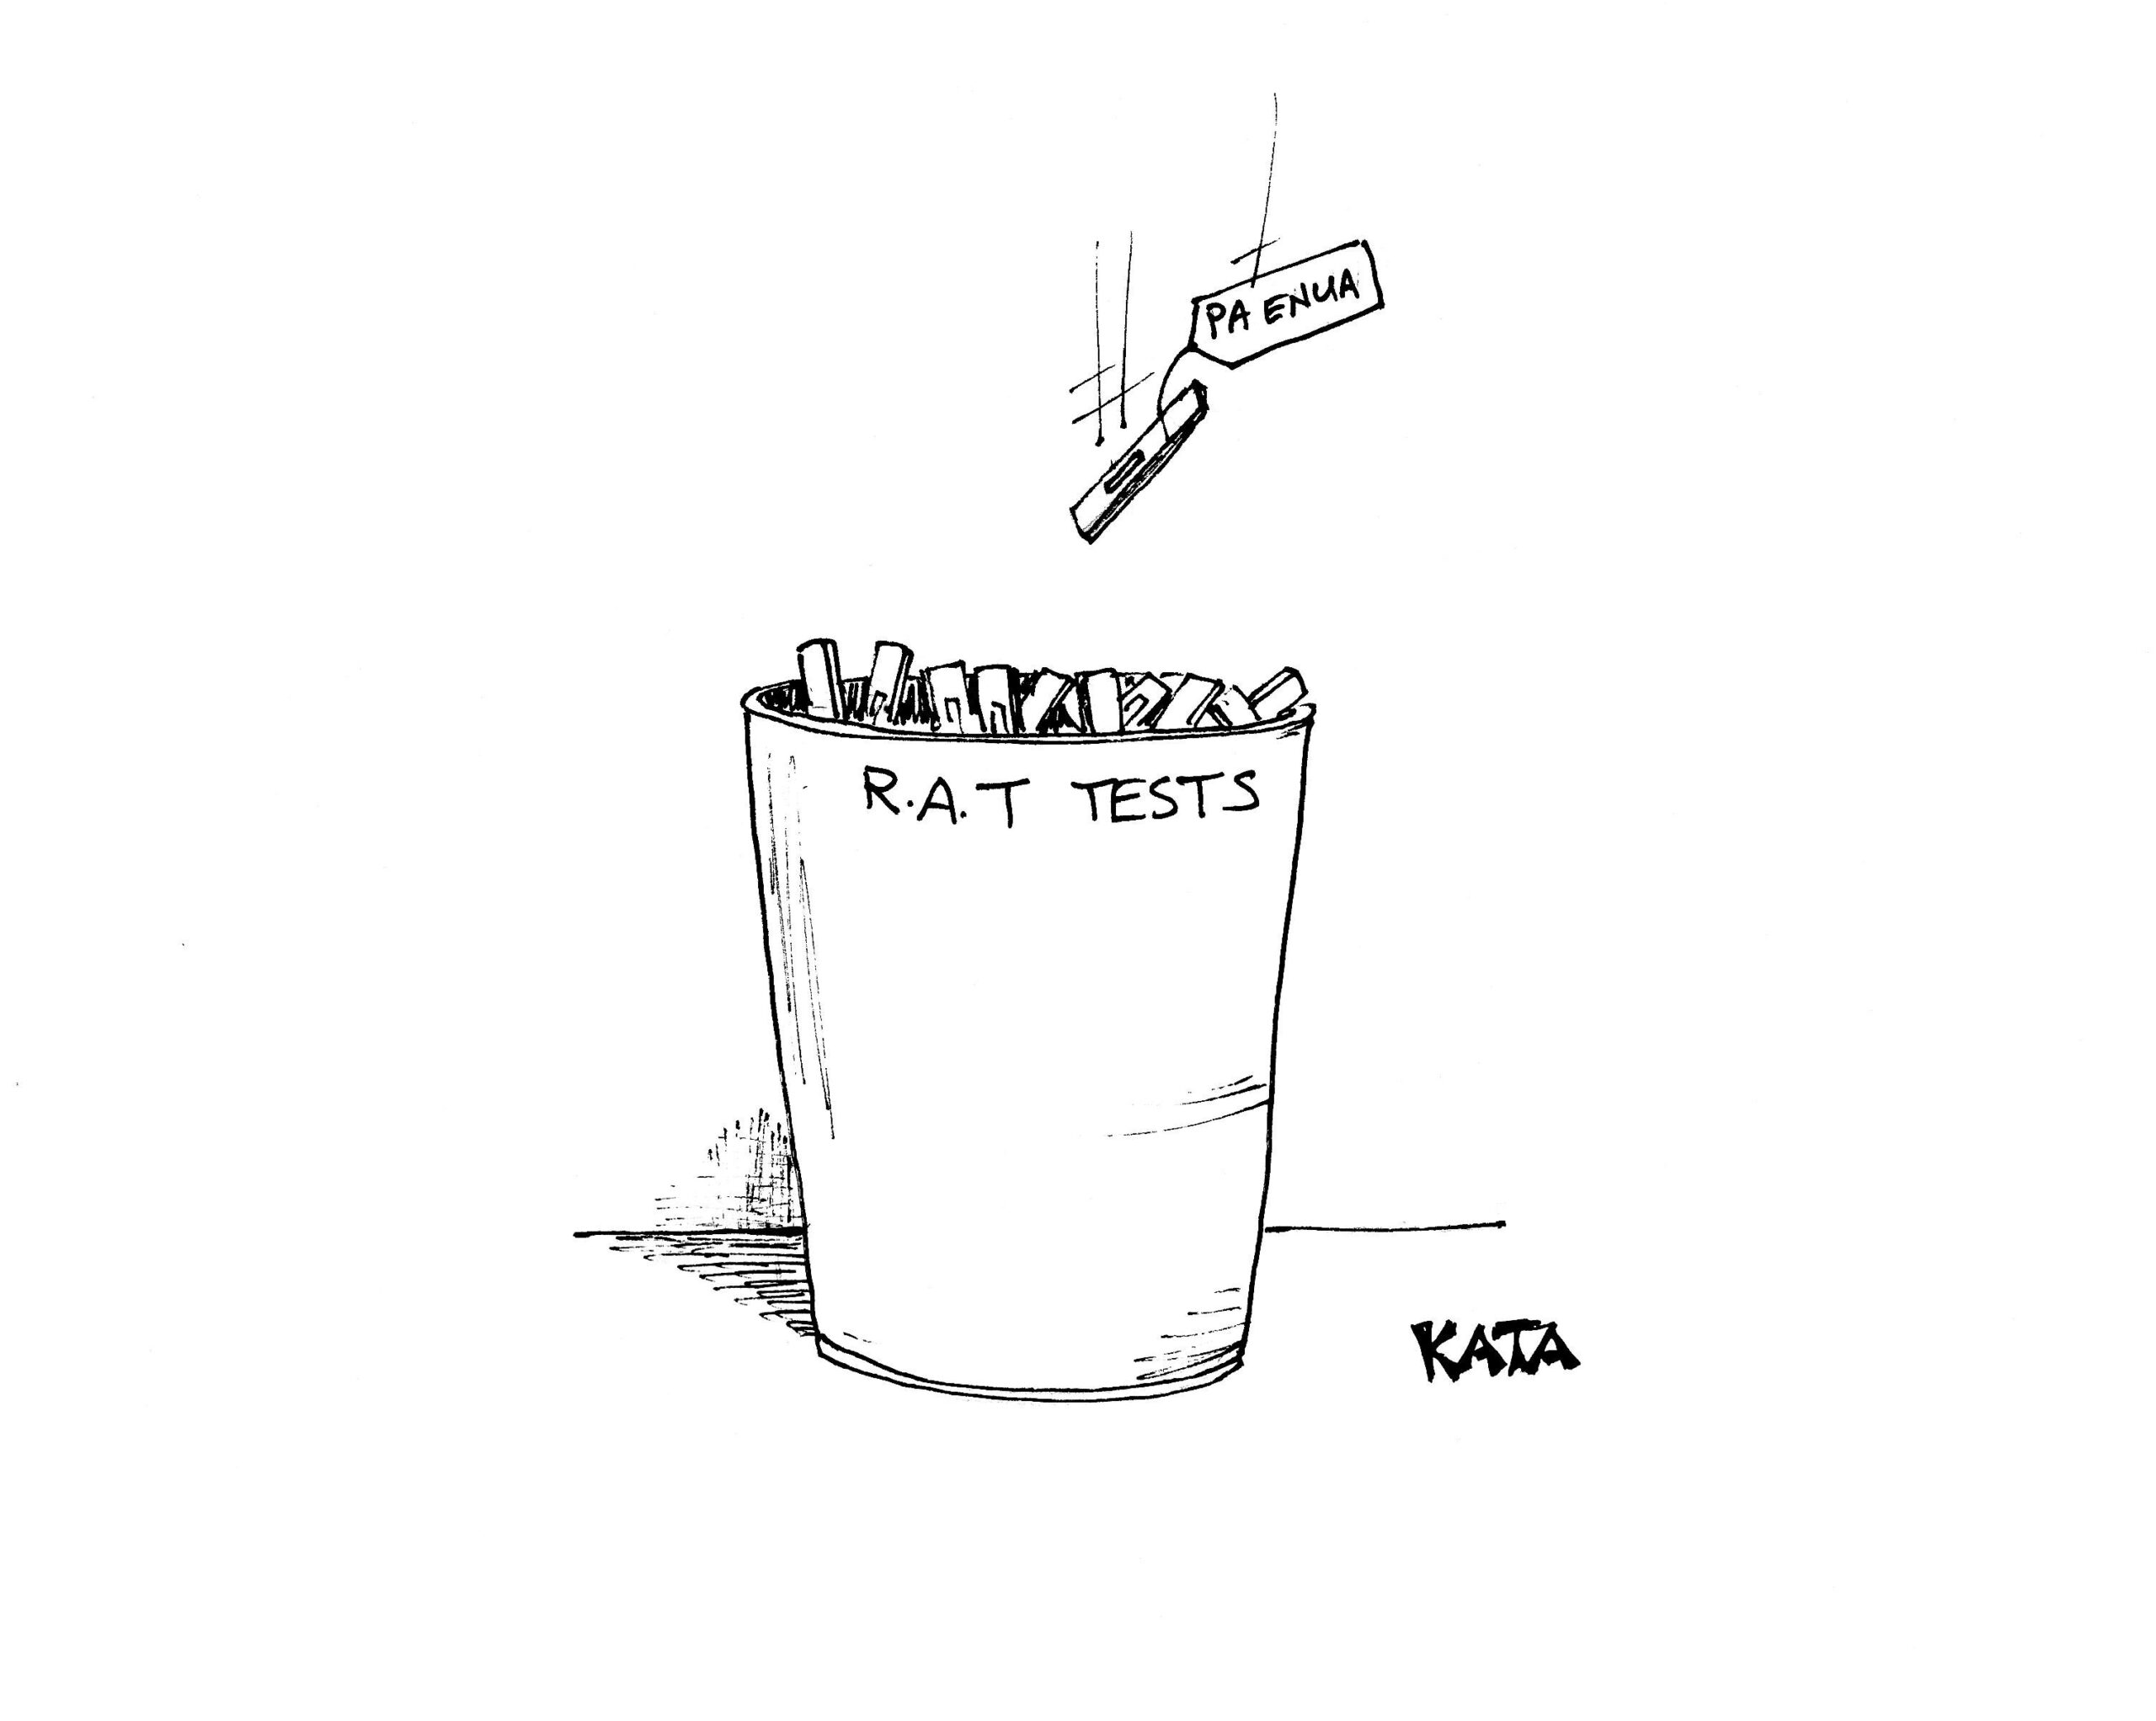 Kata: RAT tests